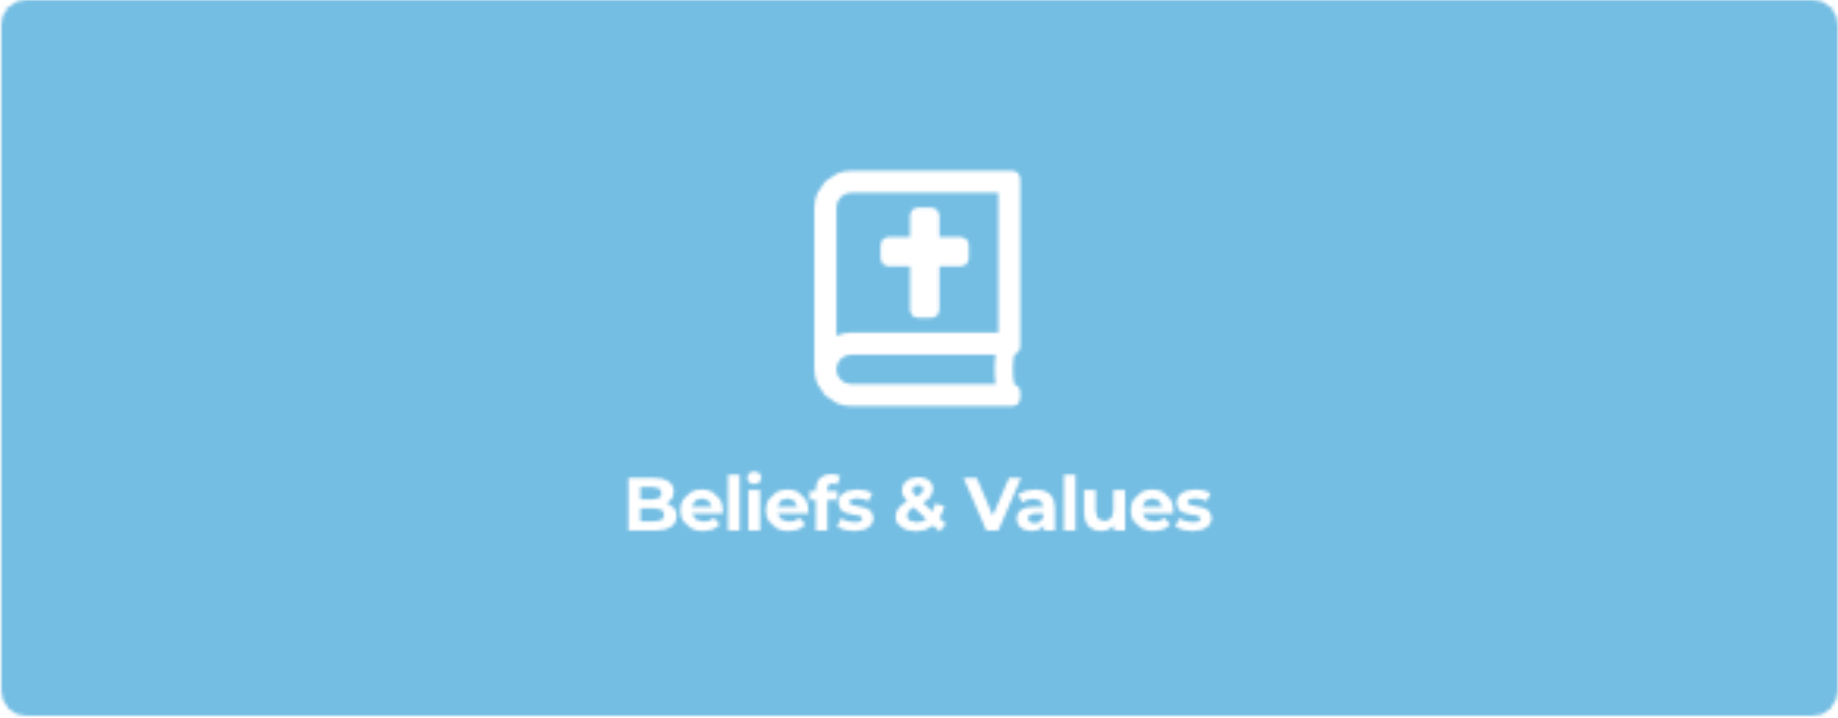 beliefs-values-about-cta